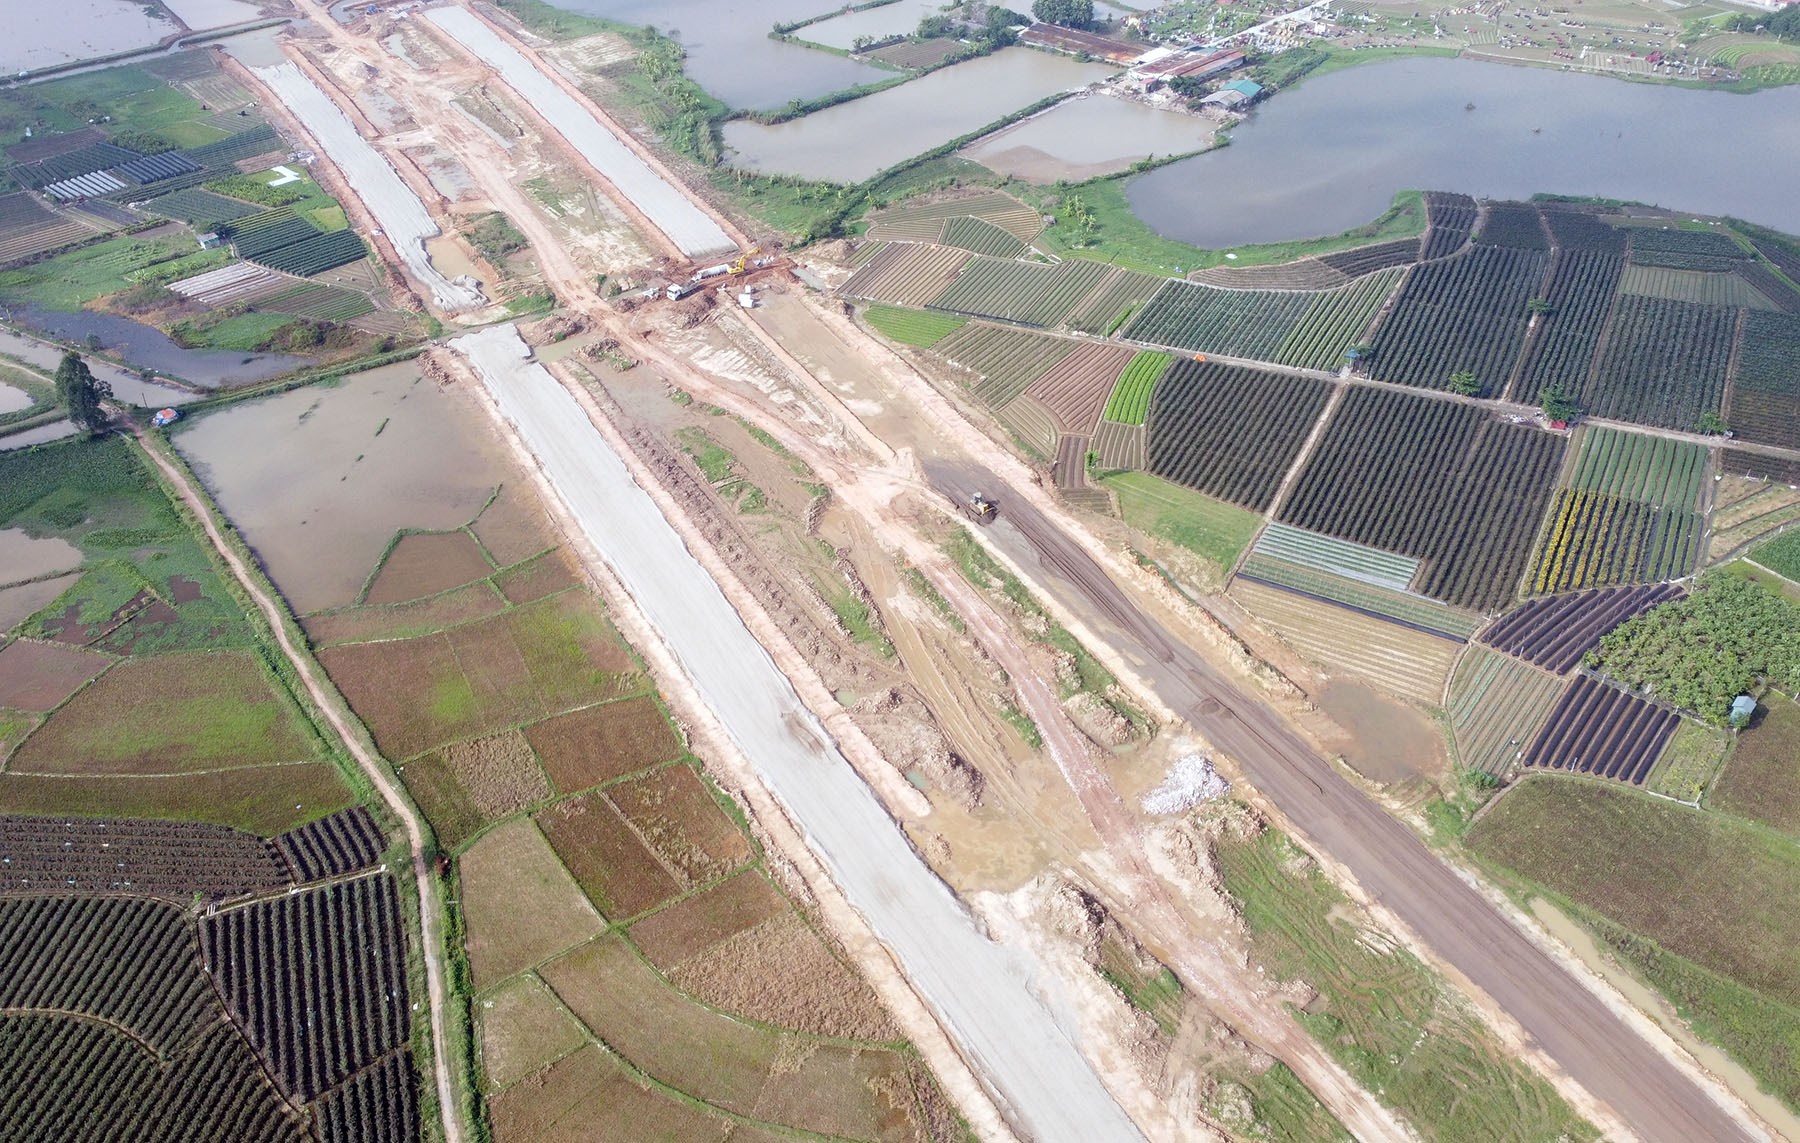 Hình ảnh vành đai 4 qua huyện Mê Linh, Hà Nội đang xây dựng